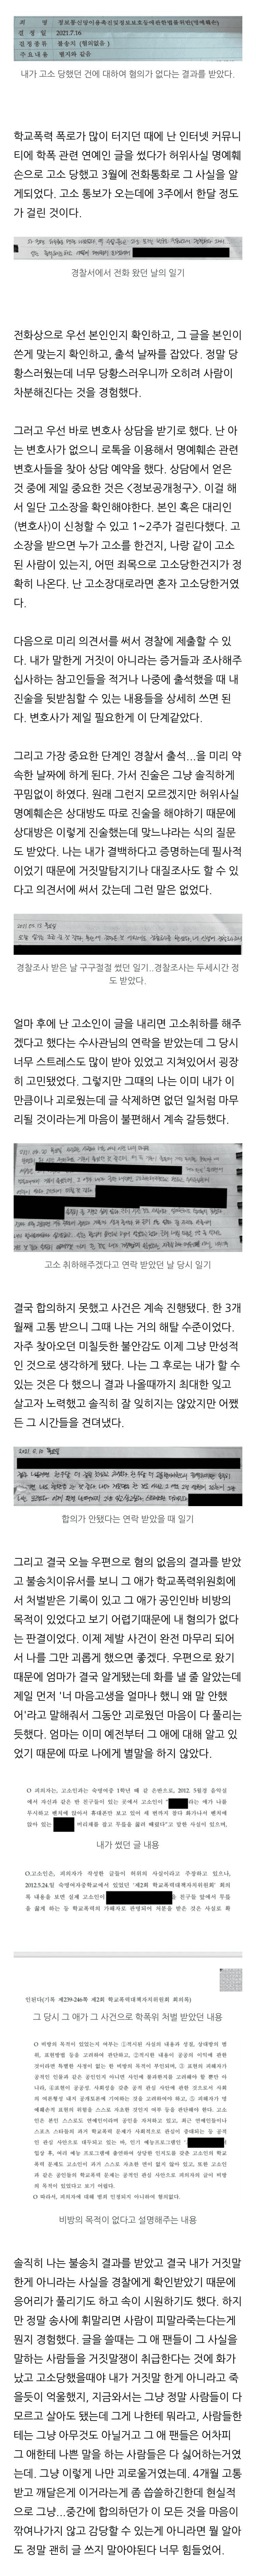 김소혜 학폭 논란